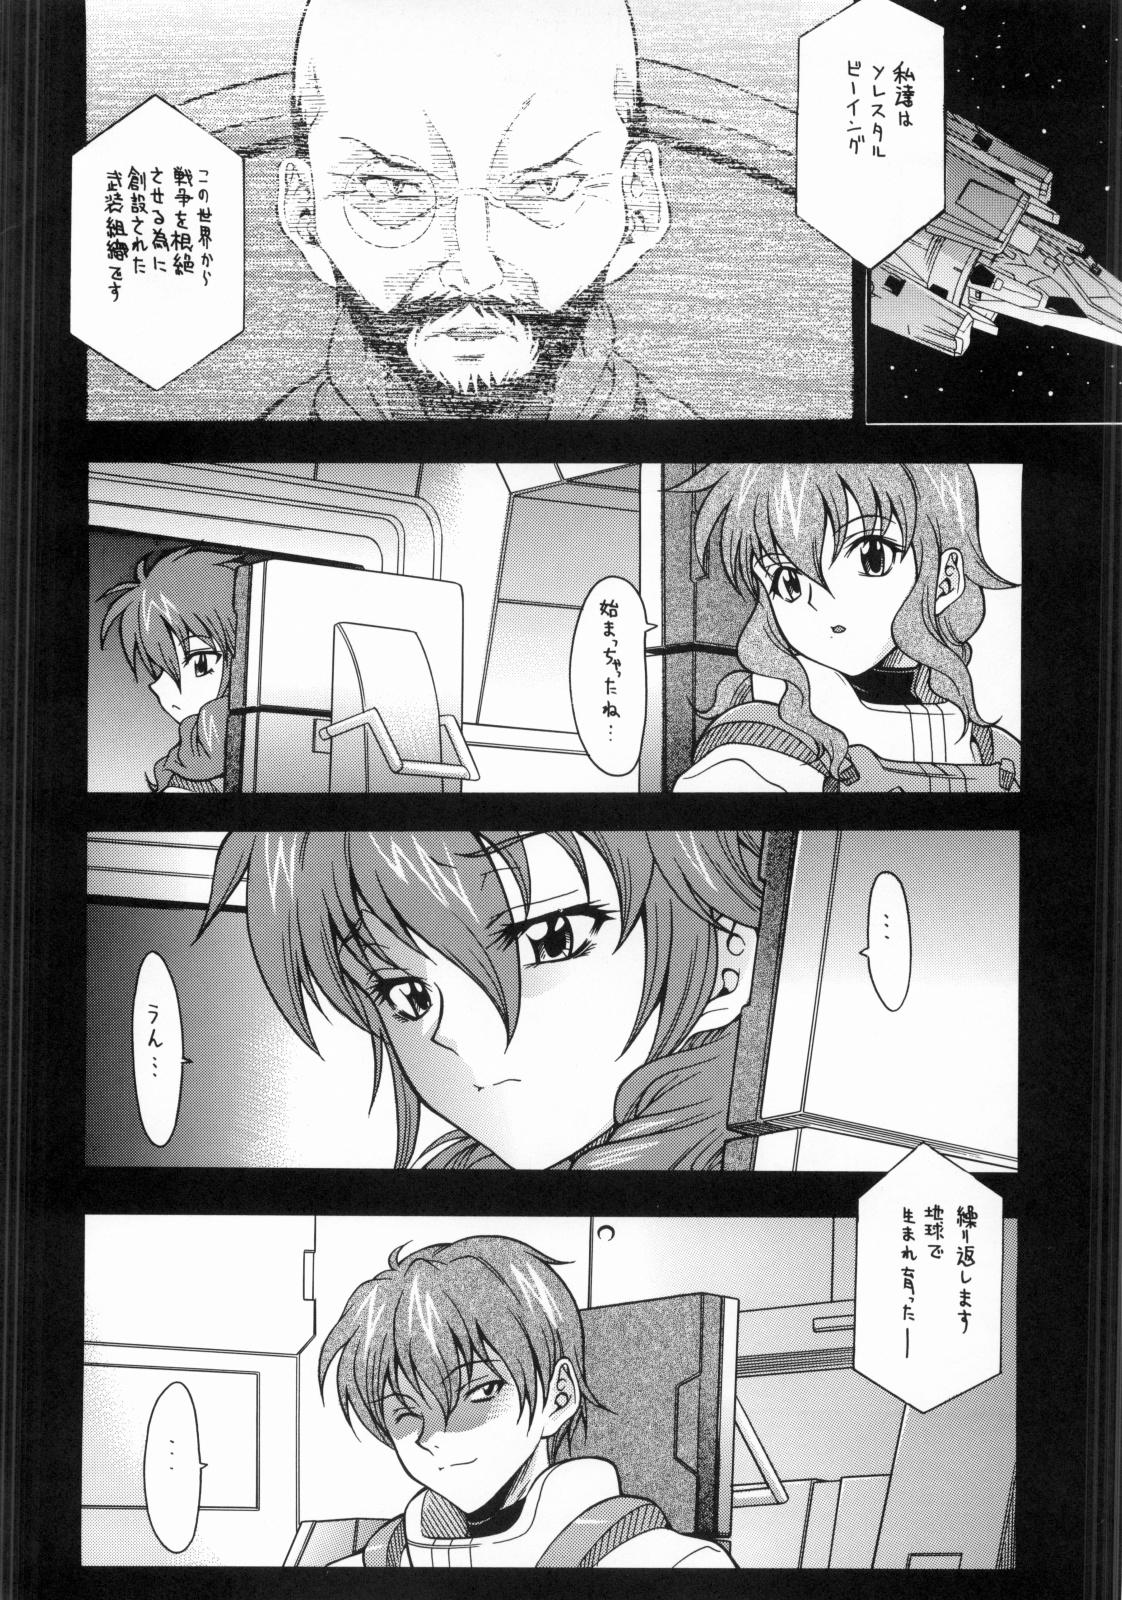 Facesitting O-Plus O1 - Gundam 00 Amazing - Page 3